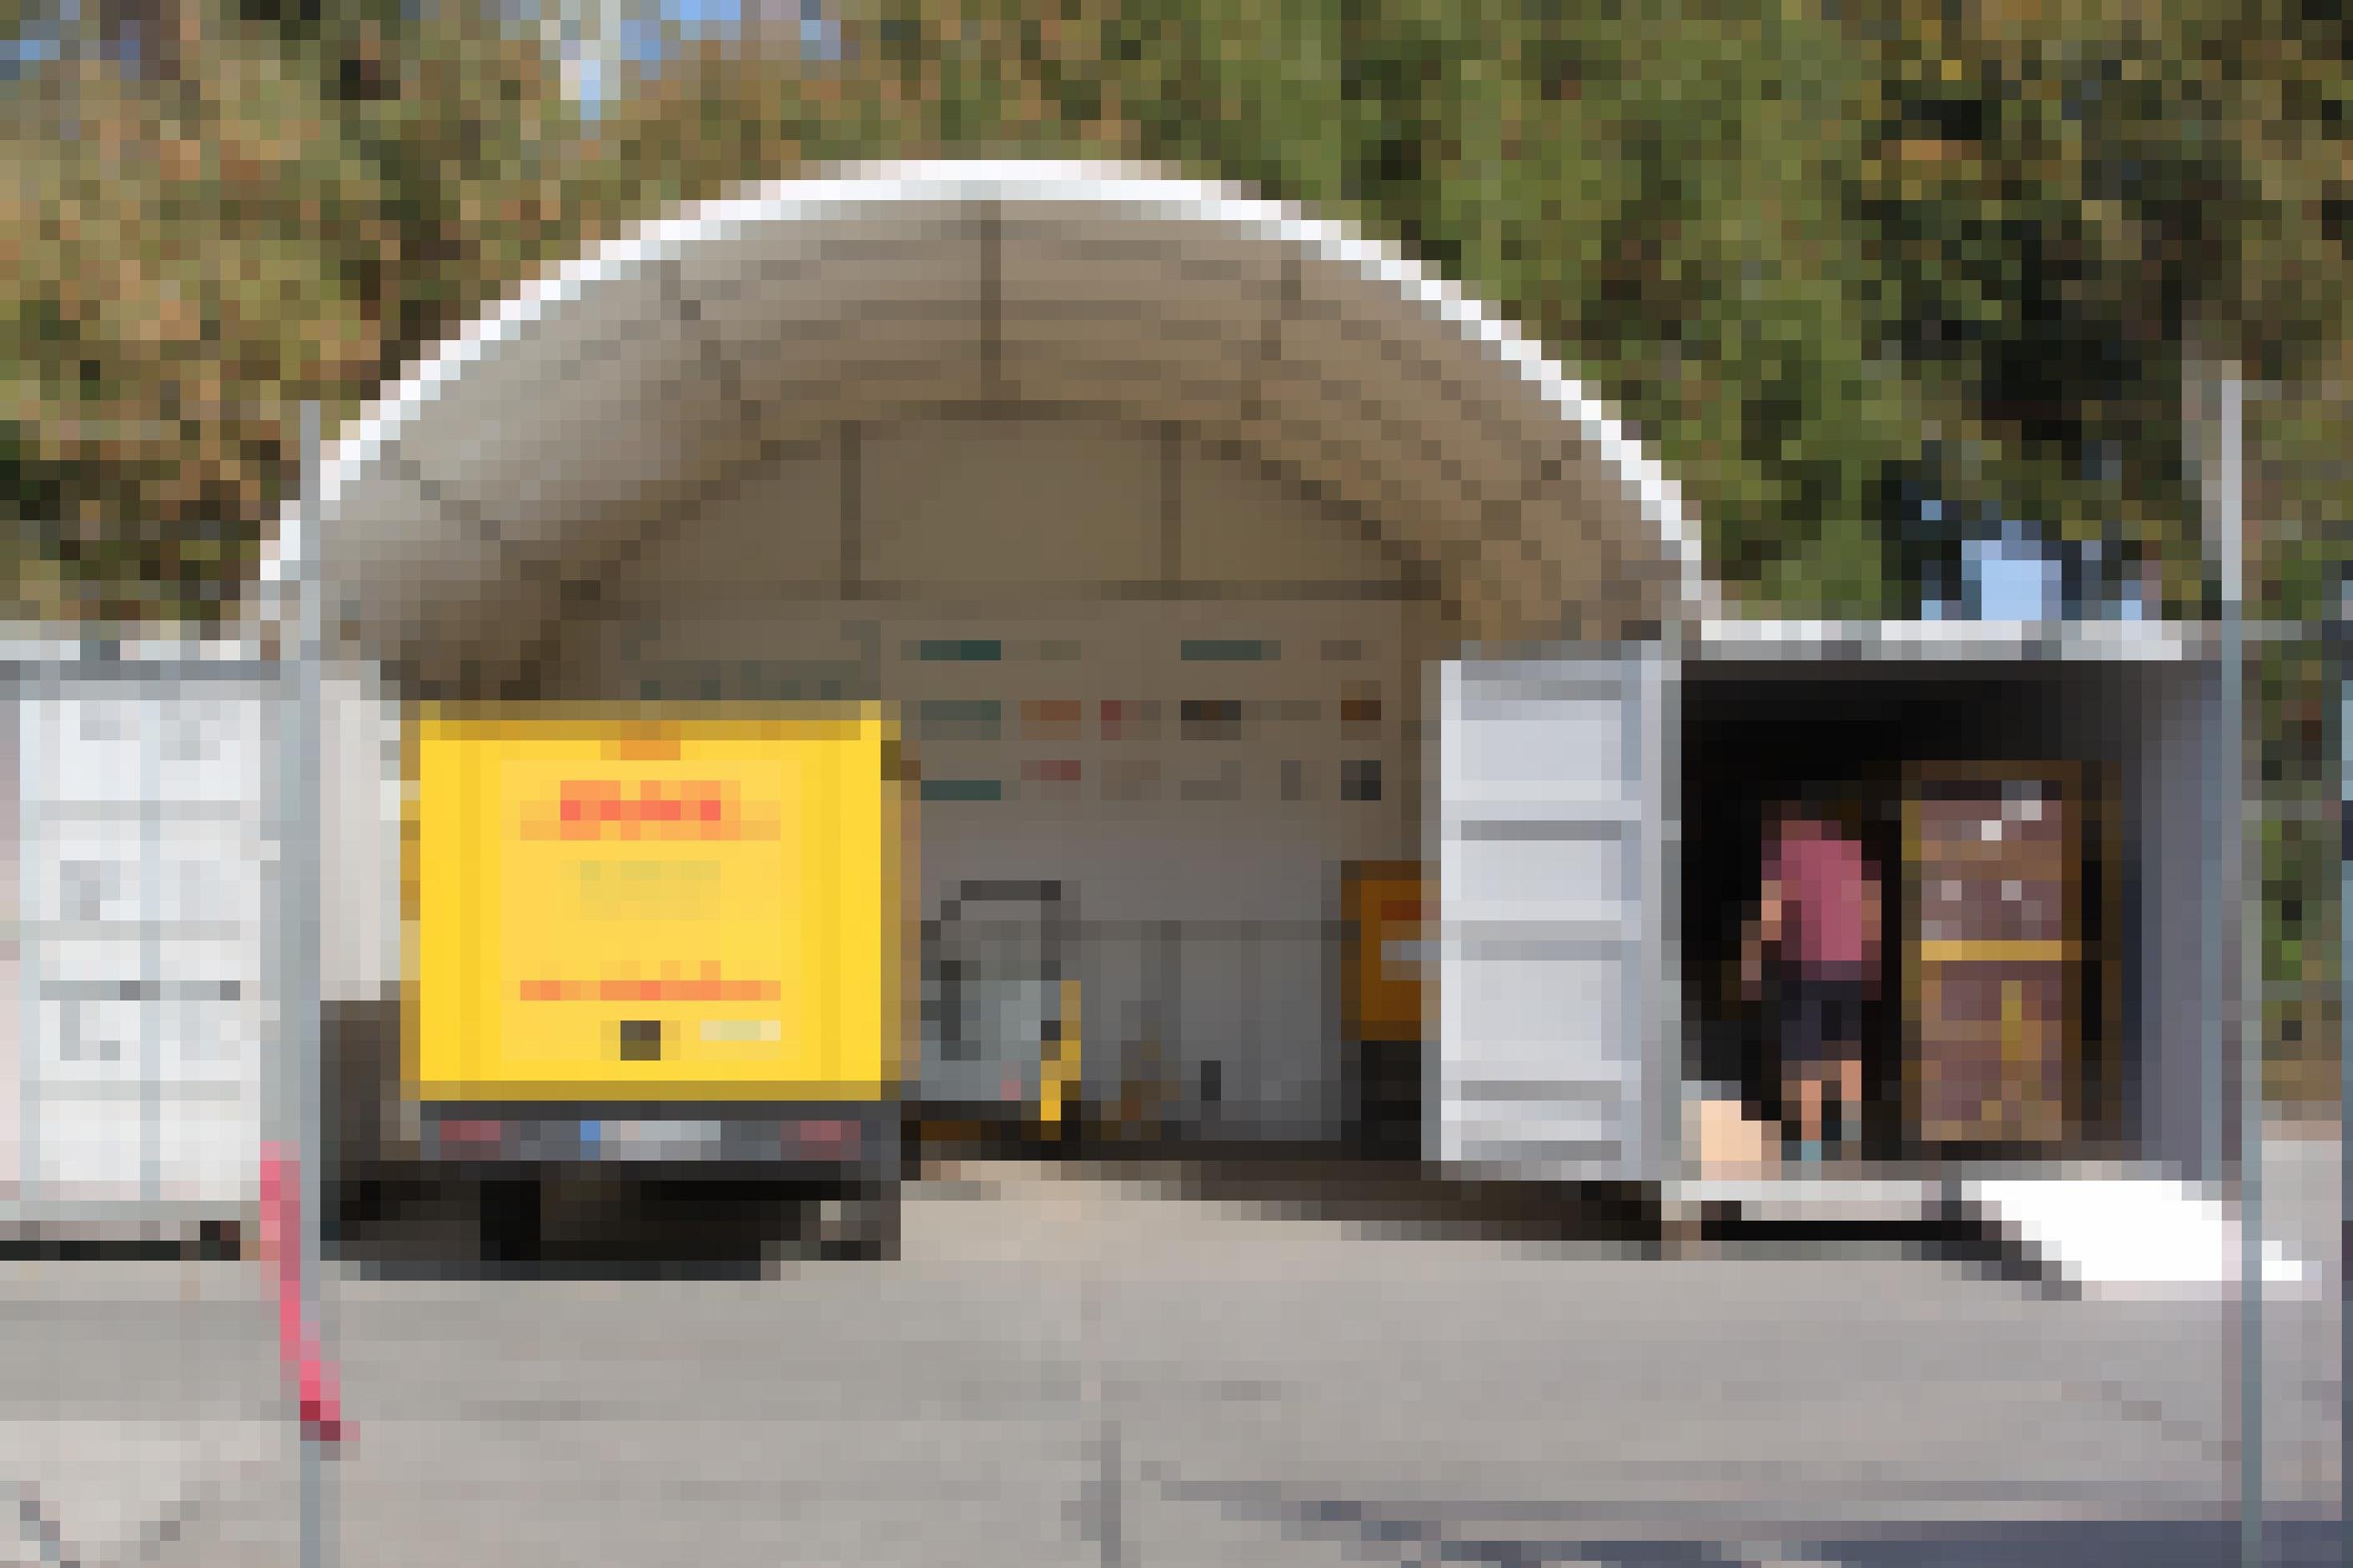 Ein kleiner DHL-Lastwagen steht unter einem runden Dach. Auf beiden Seiten sind Container zu sehen. Der rechte Container ist geöffnet, in ihm steht ein Mann.